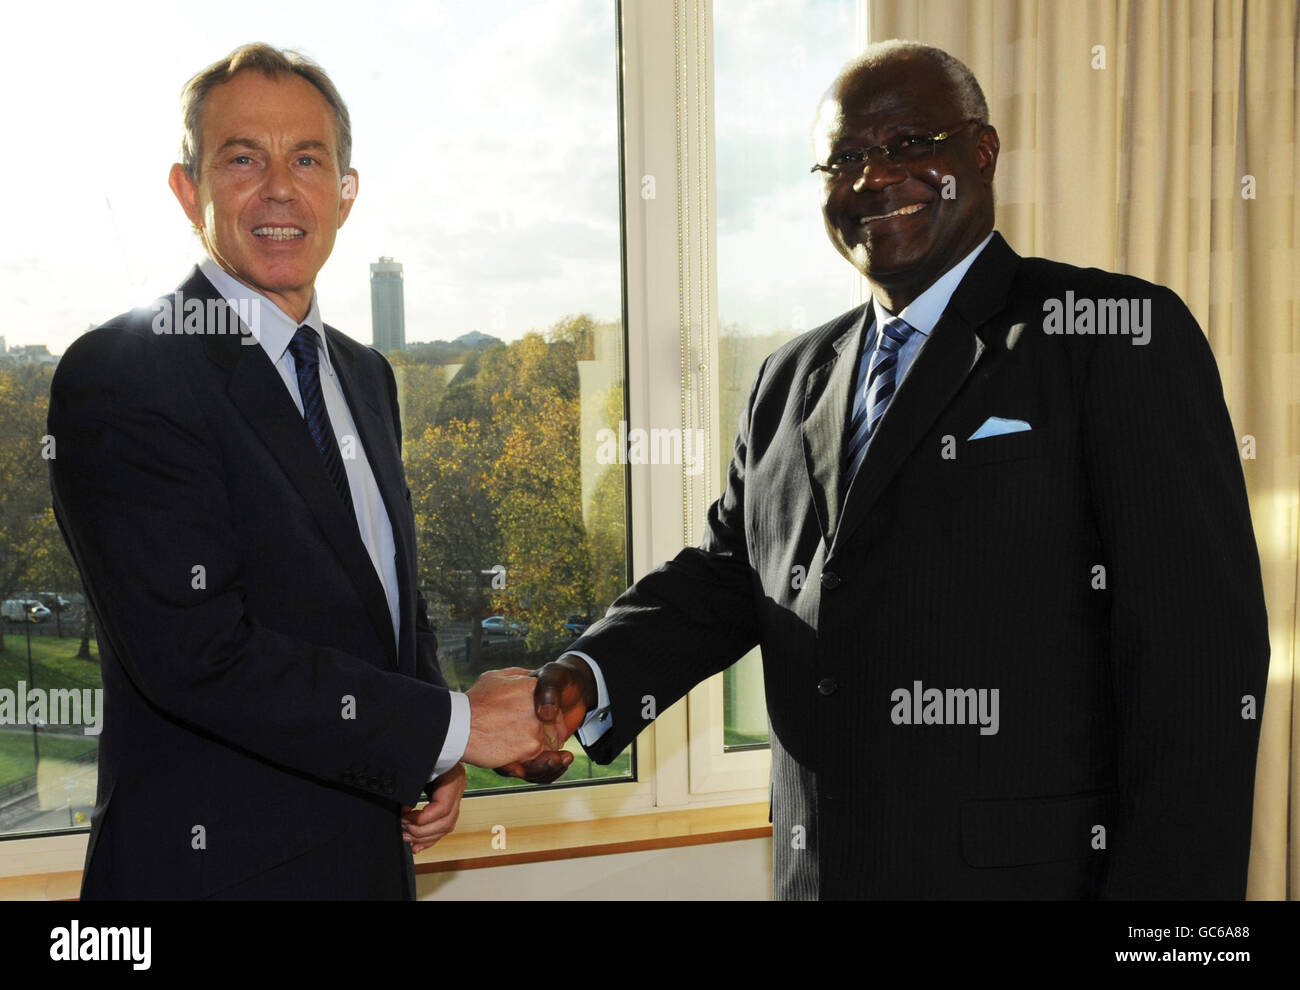 L'ex primo ministro Tony Blair incontra a Londra il presidente della Sierra Leone Ernest Bai Koroma, in vista del Forum per il commercio e gli investimenti della Sierra Leone. Foto Stock